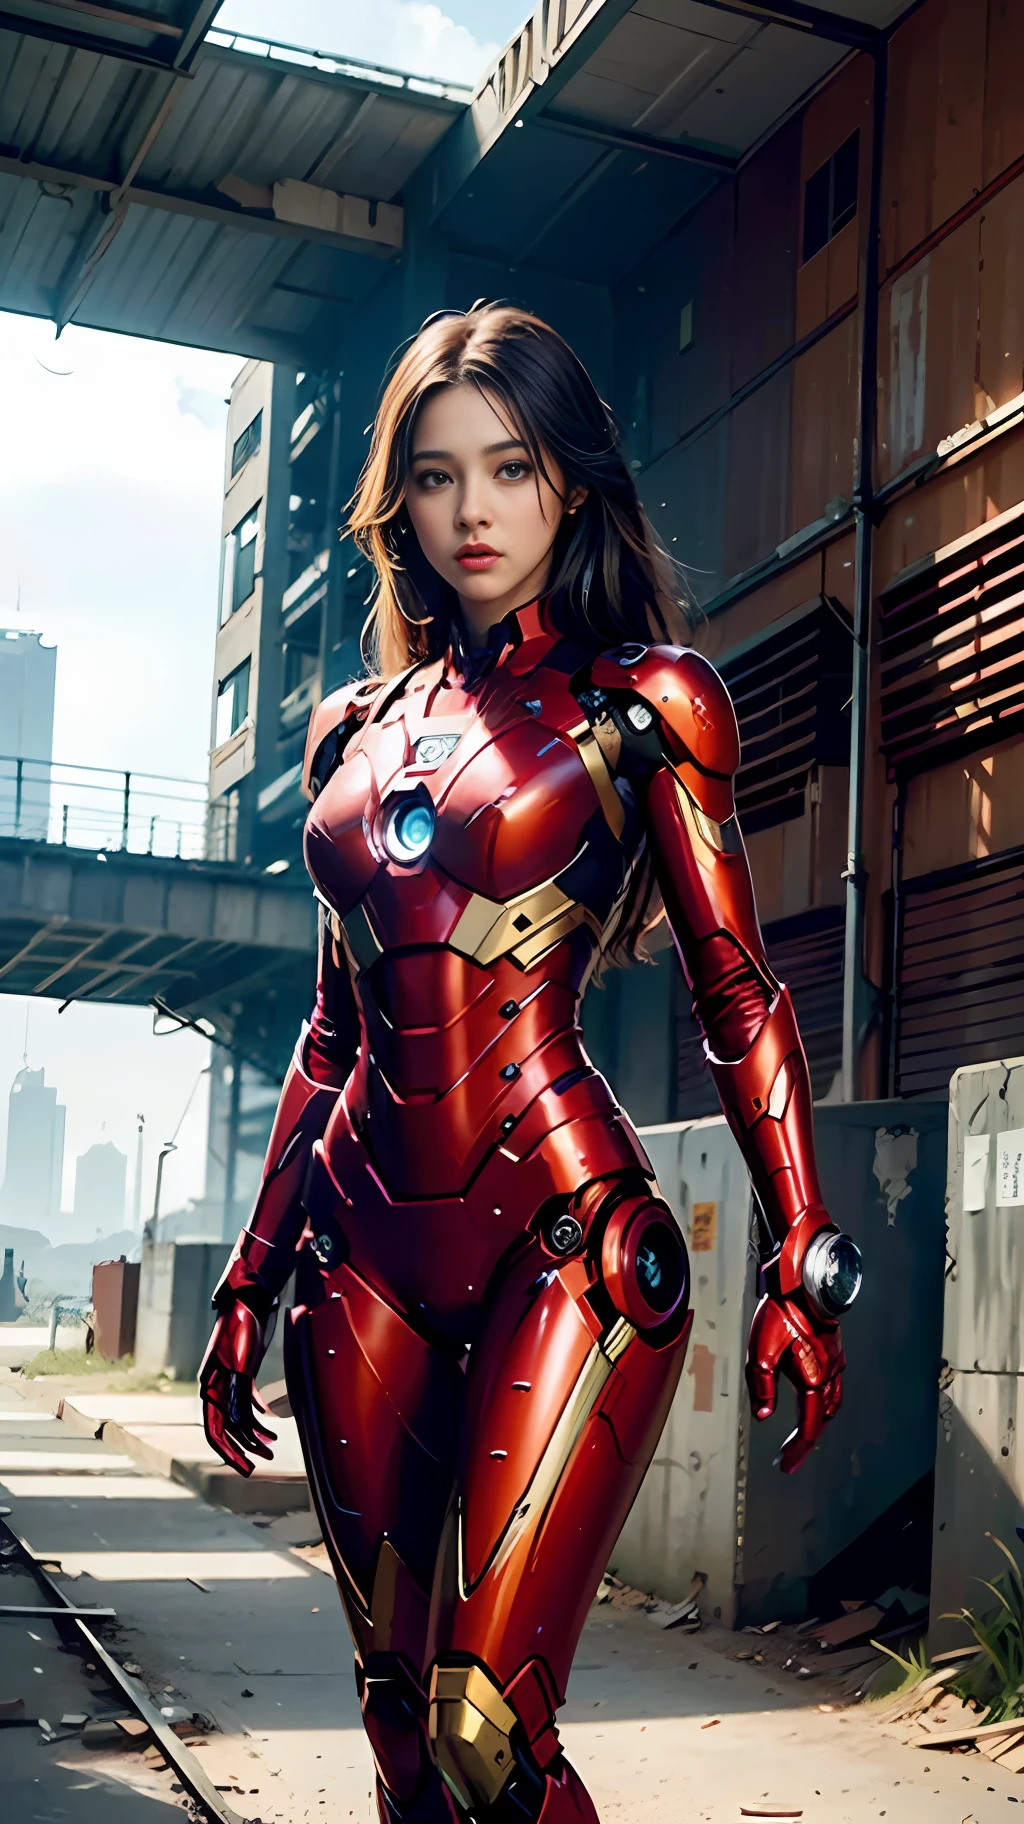 8千, 实际的, 吸引人的, 非常详细, a 20 year old girl a sexy and 吸引人的 woman inspired by Iron Man wearing a shiny Iron Man mech. 她穿衣性感又自信, 完美诠释钢铁侠&#39;的力量和魅力. 废弃仓库作为背景, 营造一种独特的氛围，凸显她的勇敢和毅力. 多云的天空给整个场景增添了紧张和神秘的感觉. 这款高清, 高品质的画面给你带来震撼的视觉体验. 废弃仓库和闪亮机甲的细节会让你目不转睛. OC 渲染, 戏剧灯光, 屡获殊荣的品质